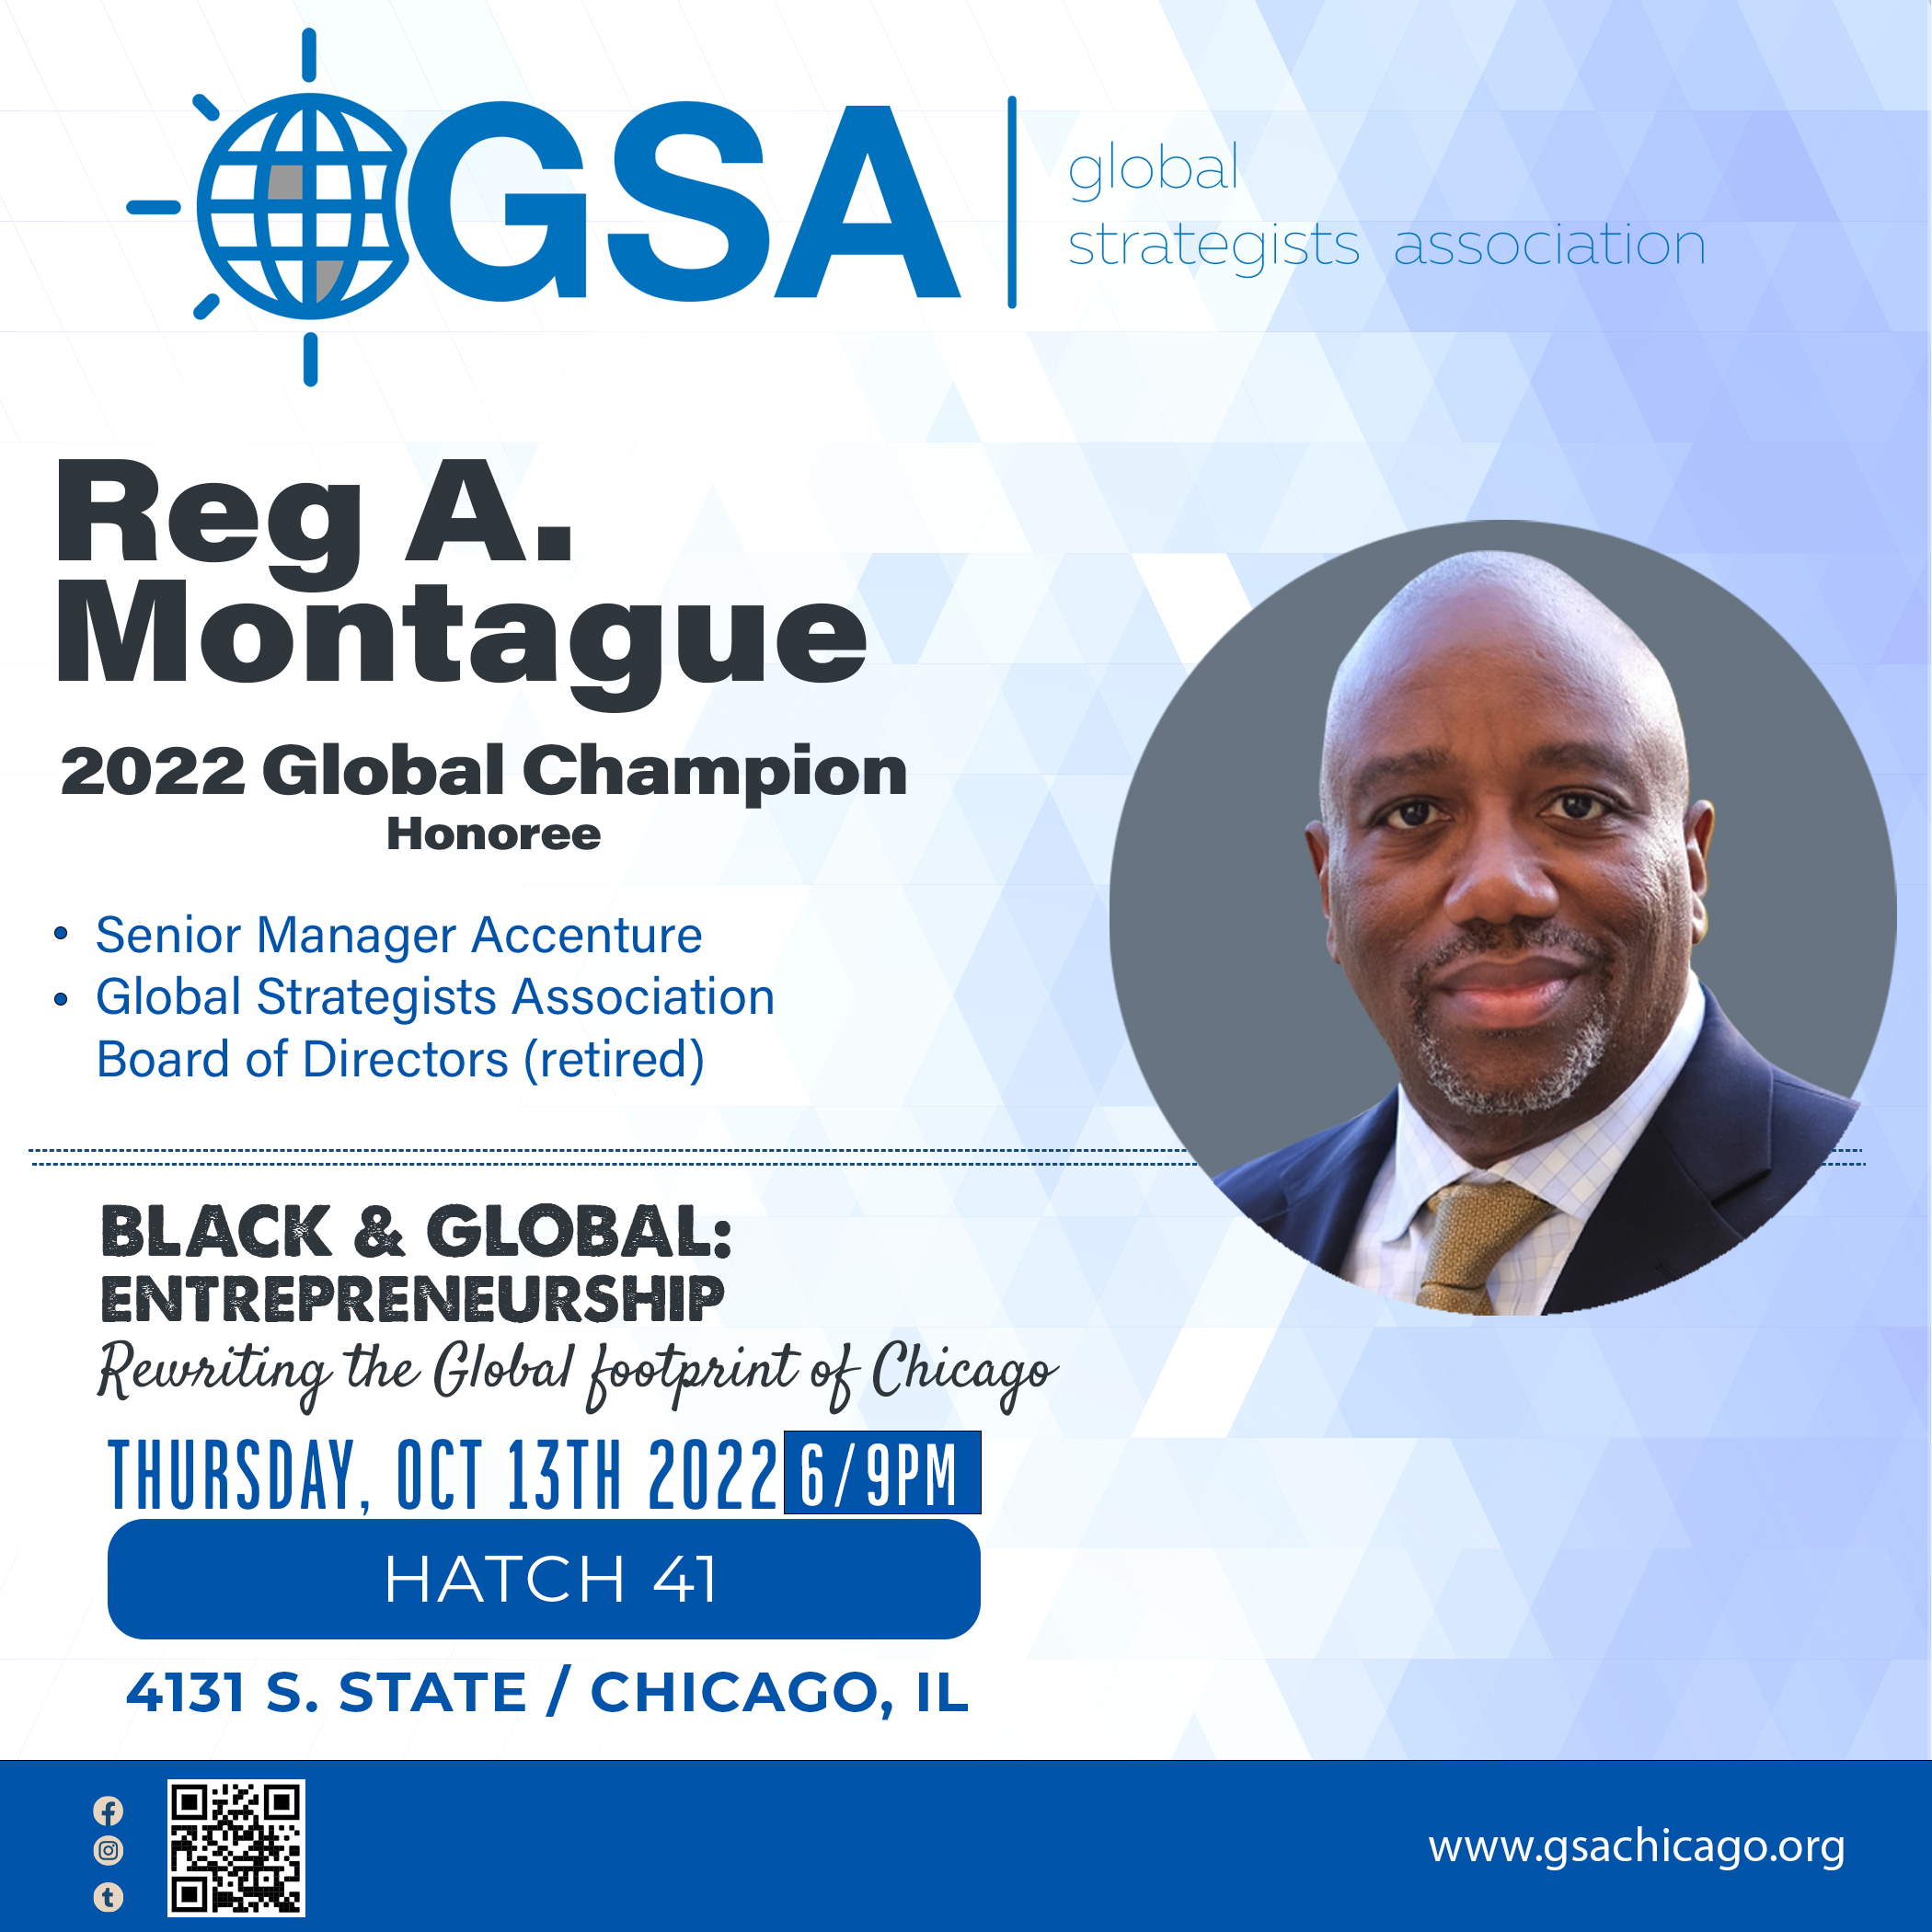 GSA Reg A. Montague